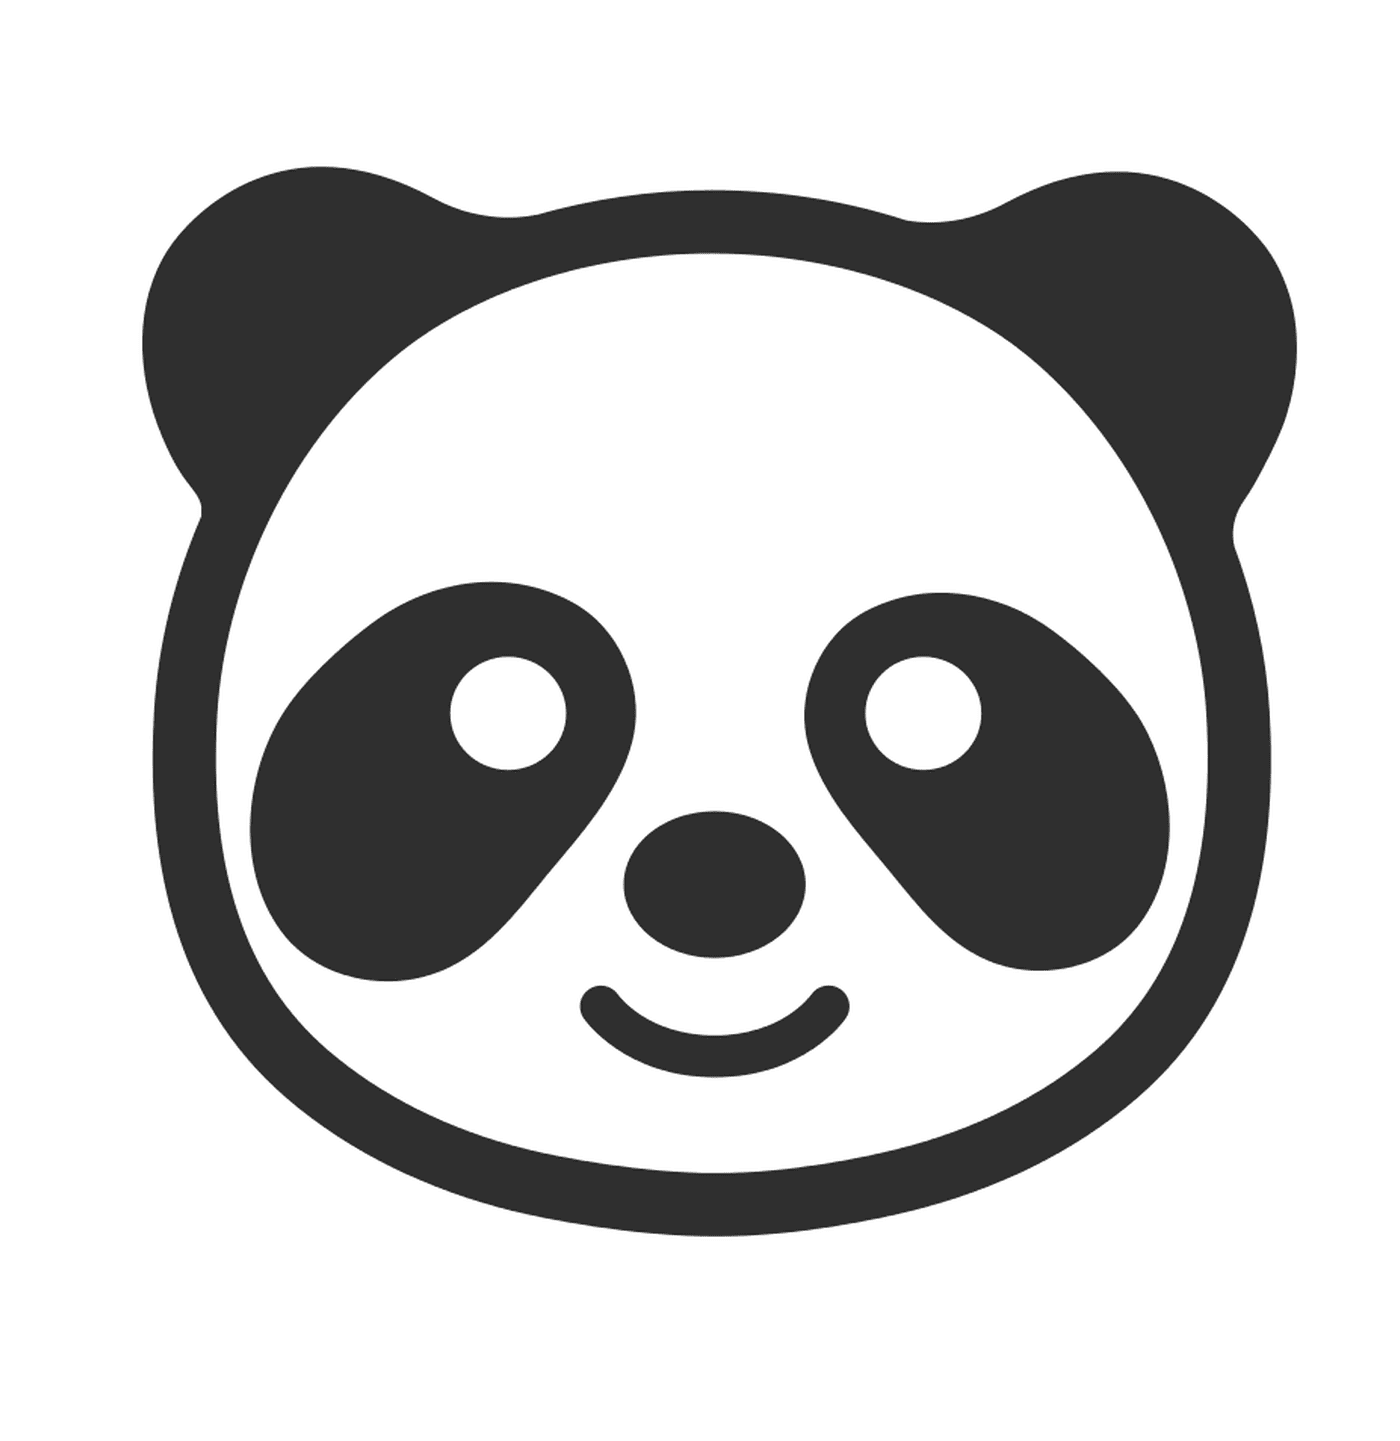  एमोजी प्यारा पांडा 